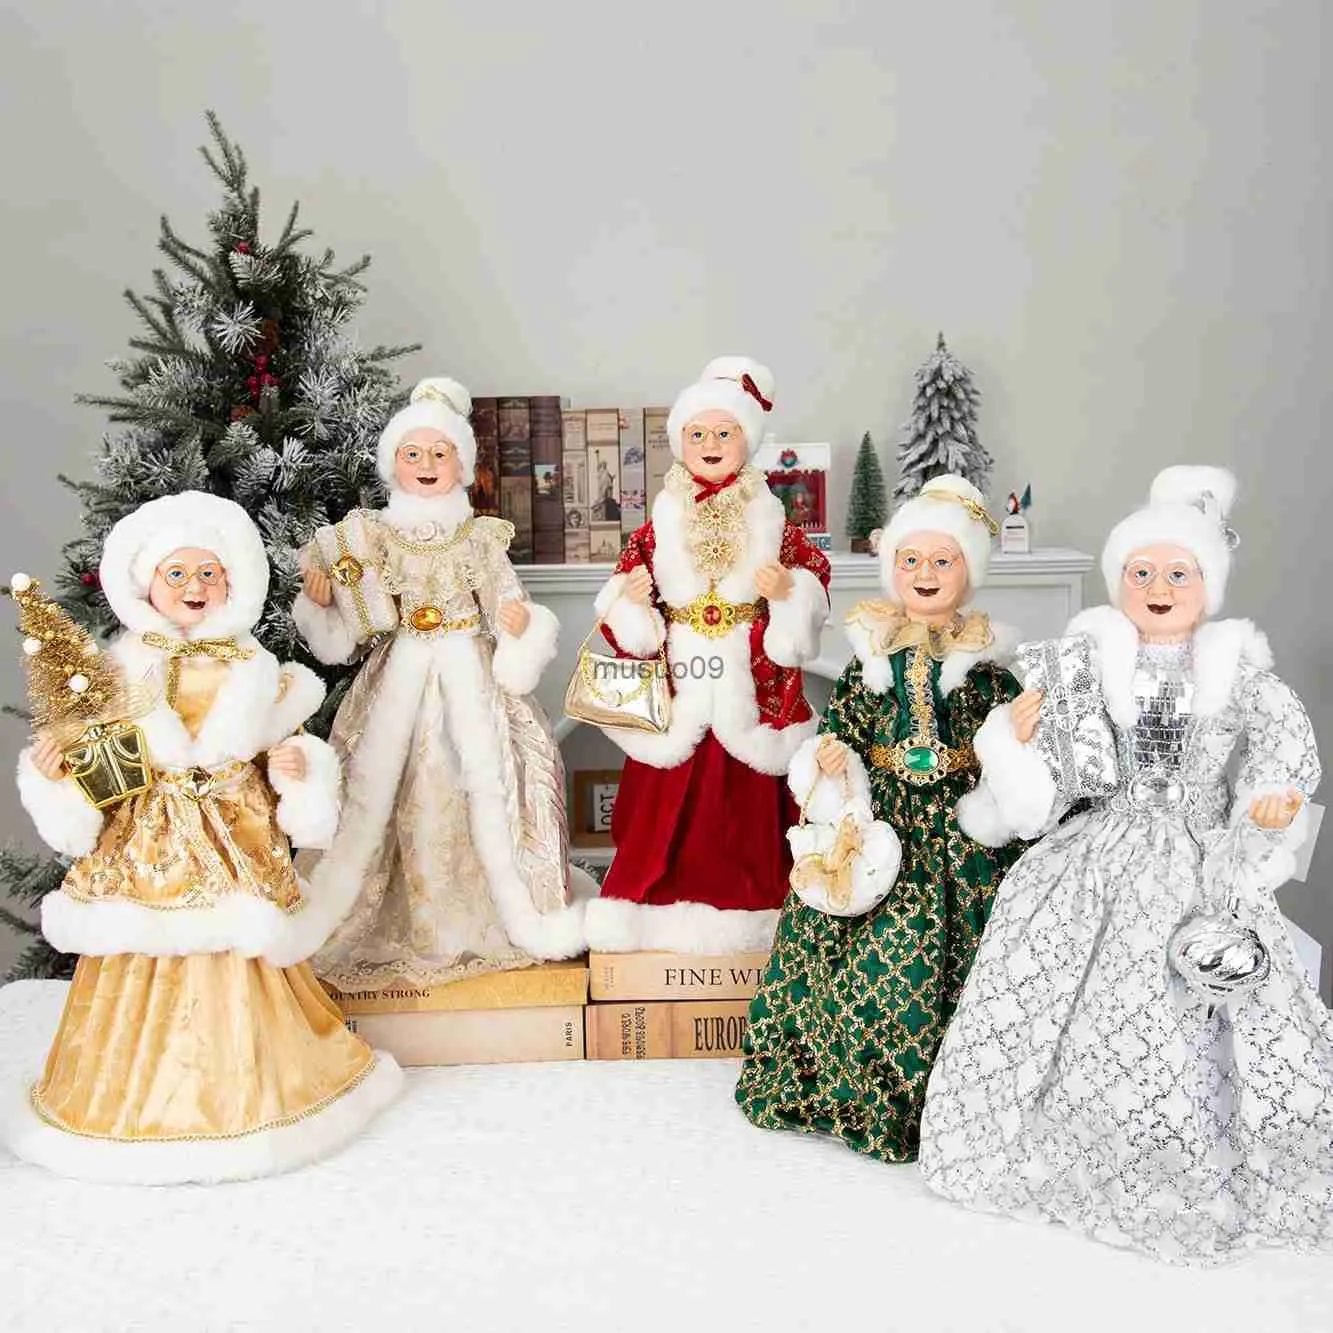 クリスマスの装飾45cmサンタクロース装飾クリスマスツリーの装飾品サンタクロースドールおじいちゃんとおばあちゃん新年ホームデコレーションハッピーニューヨール2311111111111111111111111111111111111